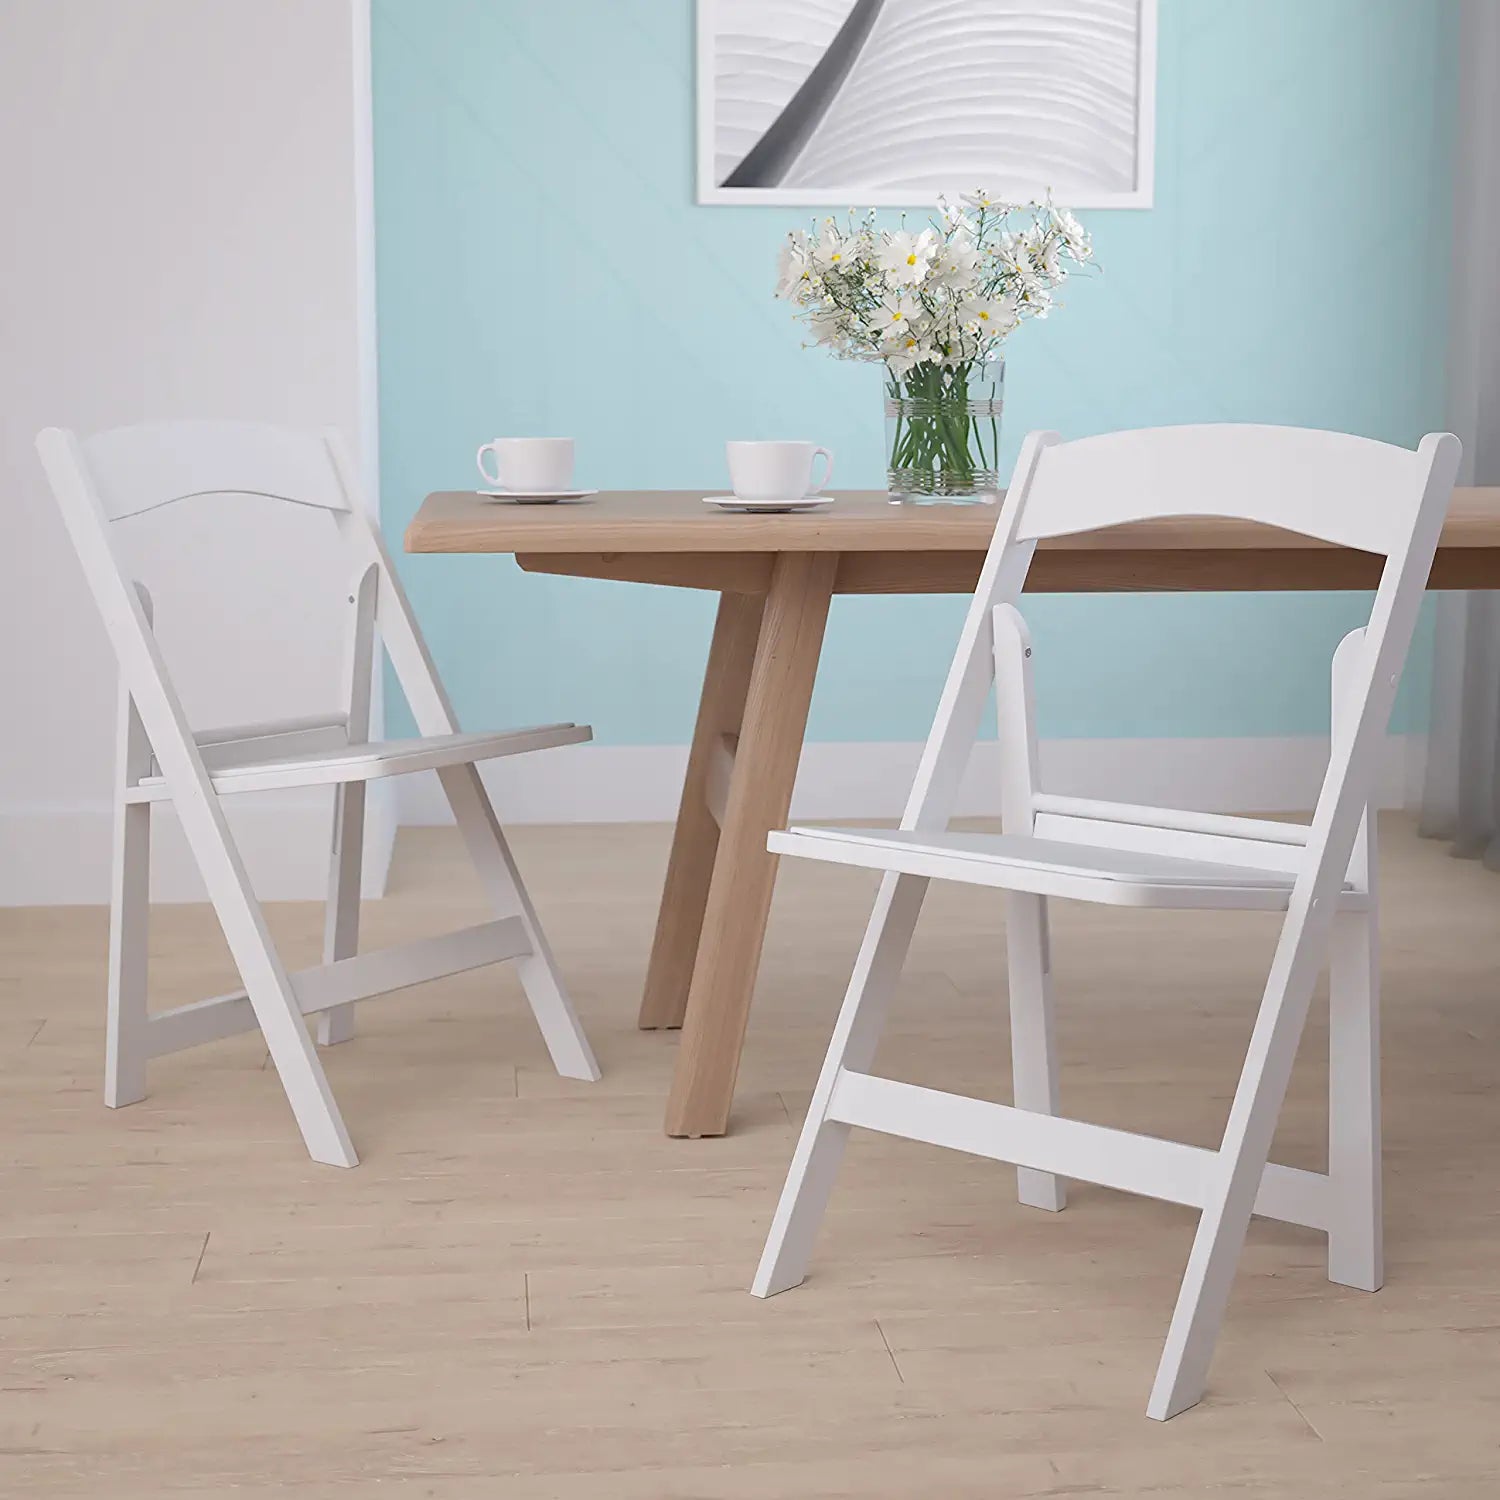 Flash Furniture Hercules√É¬¢√¢‚Ç¨≈æ√Ç¬¢ Series Folding Chair - White Resin - 2 Pack 1000LB Weight Capacity Comfortable Event Chair - Light Weight Folding Chair